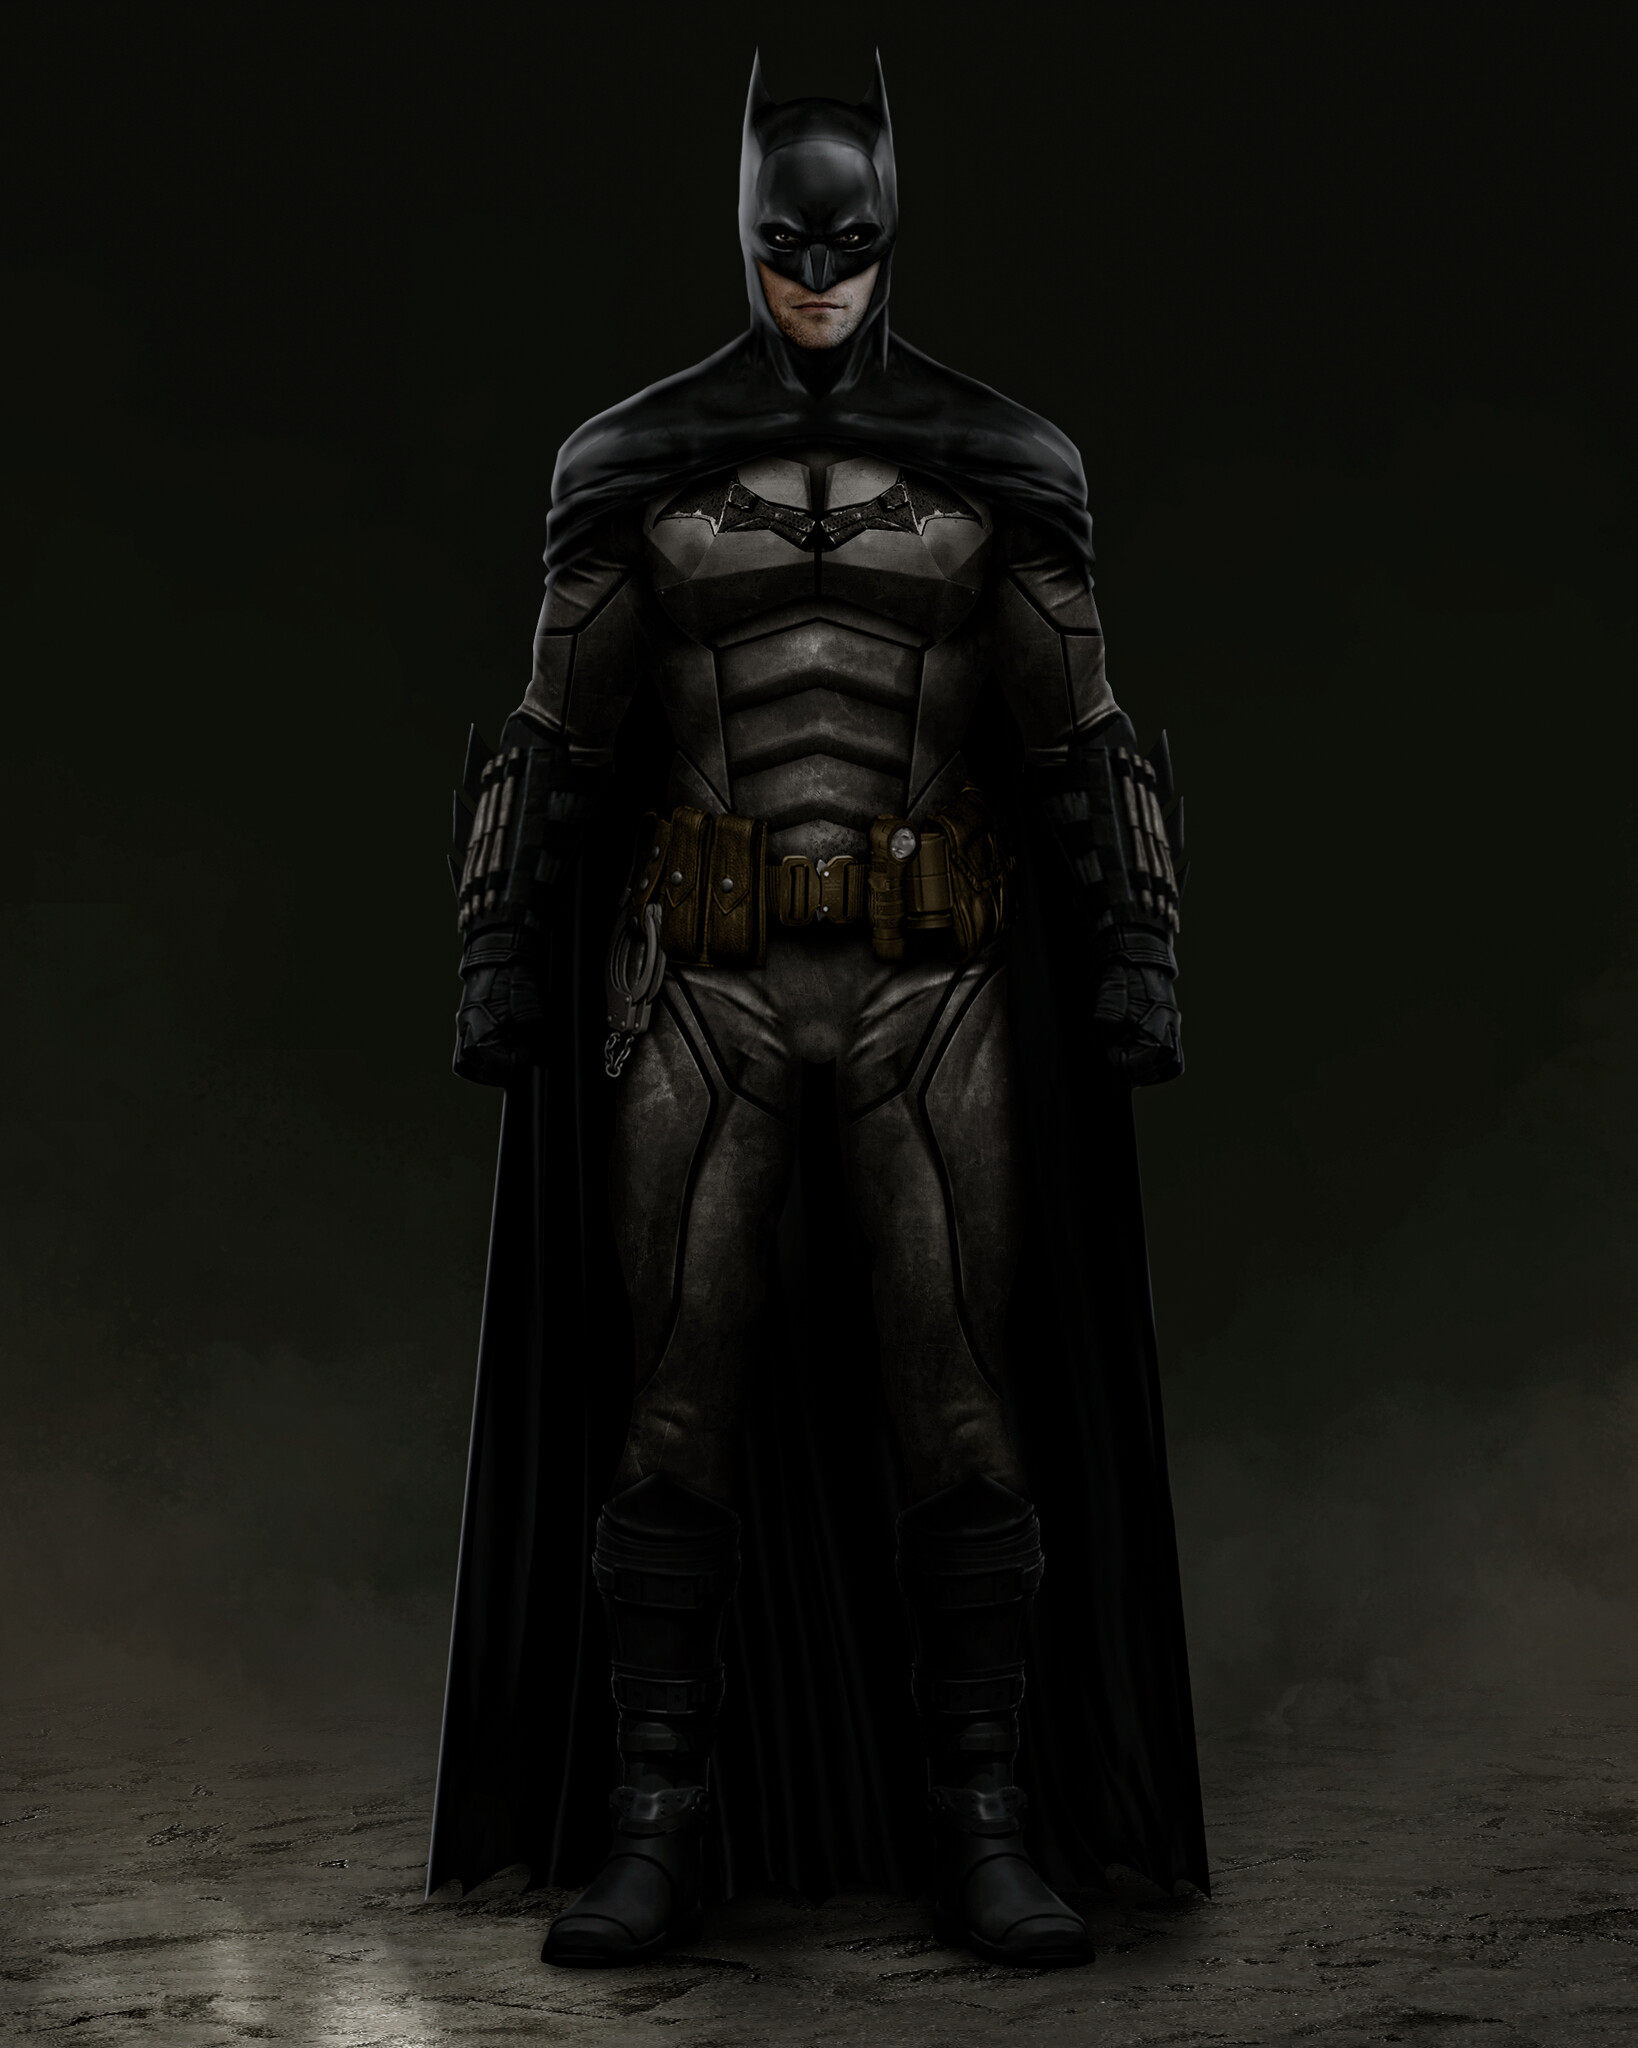 ArtStation - The Batman - Second Suit - Concept / Fanart